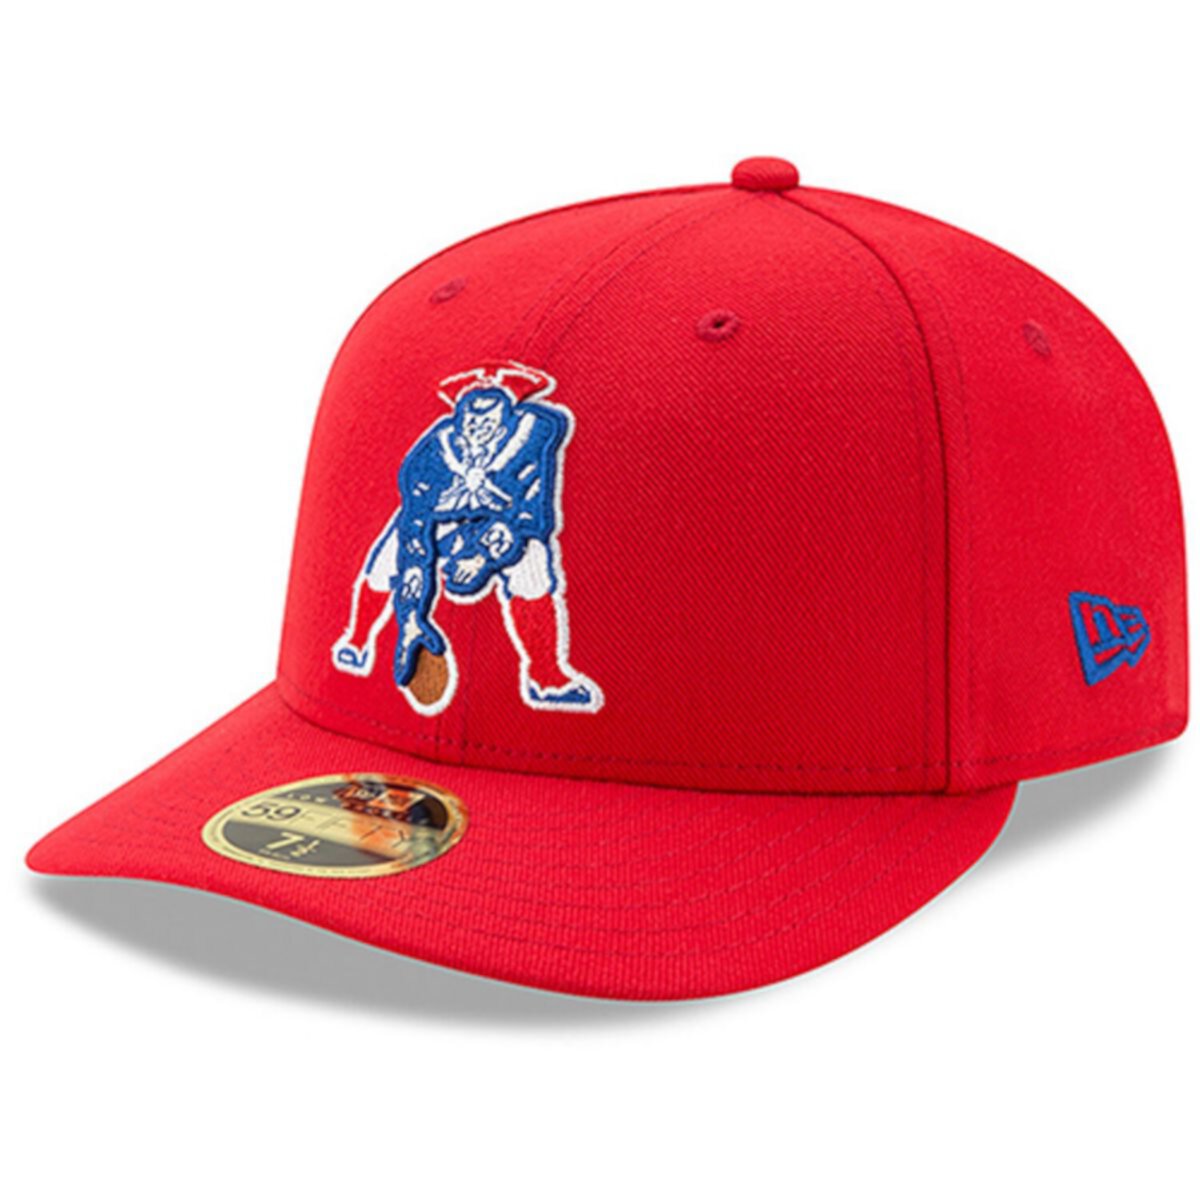 Мужская структурированная шляпа New Era Red New England Patriots Omaha с низким профилем 59FIFTY New Era